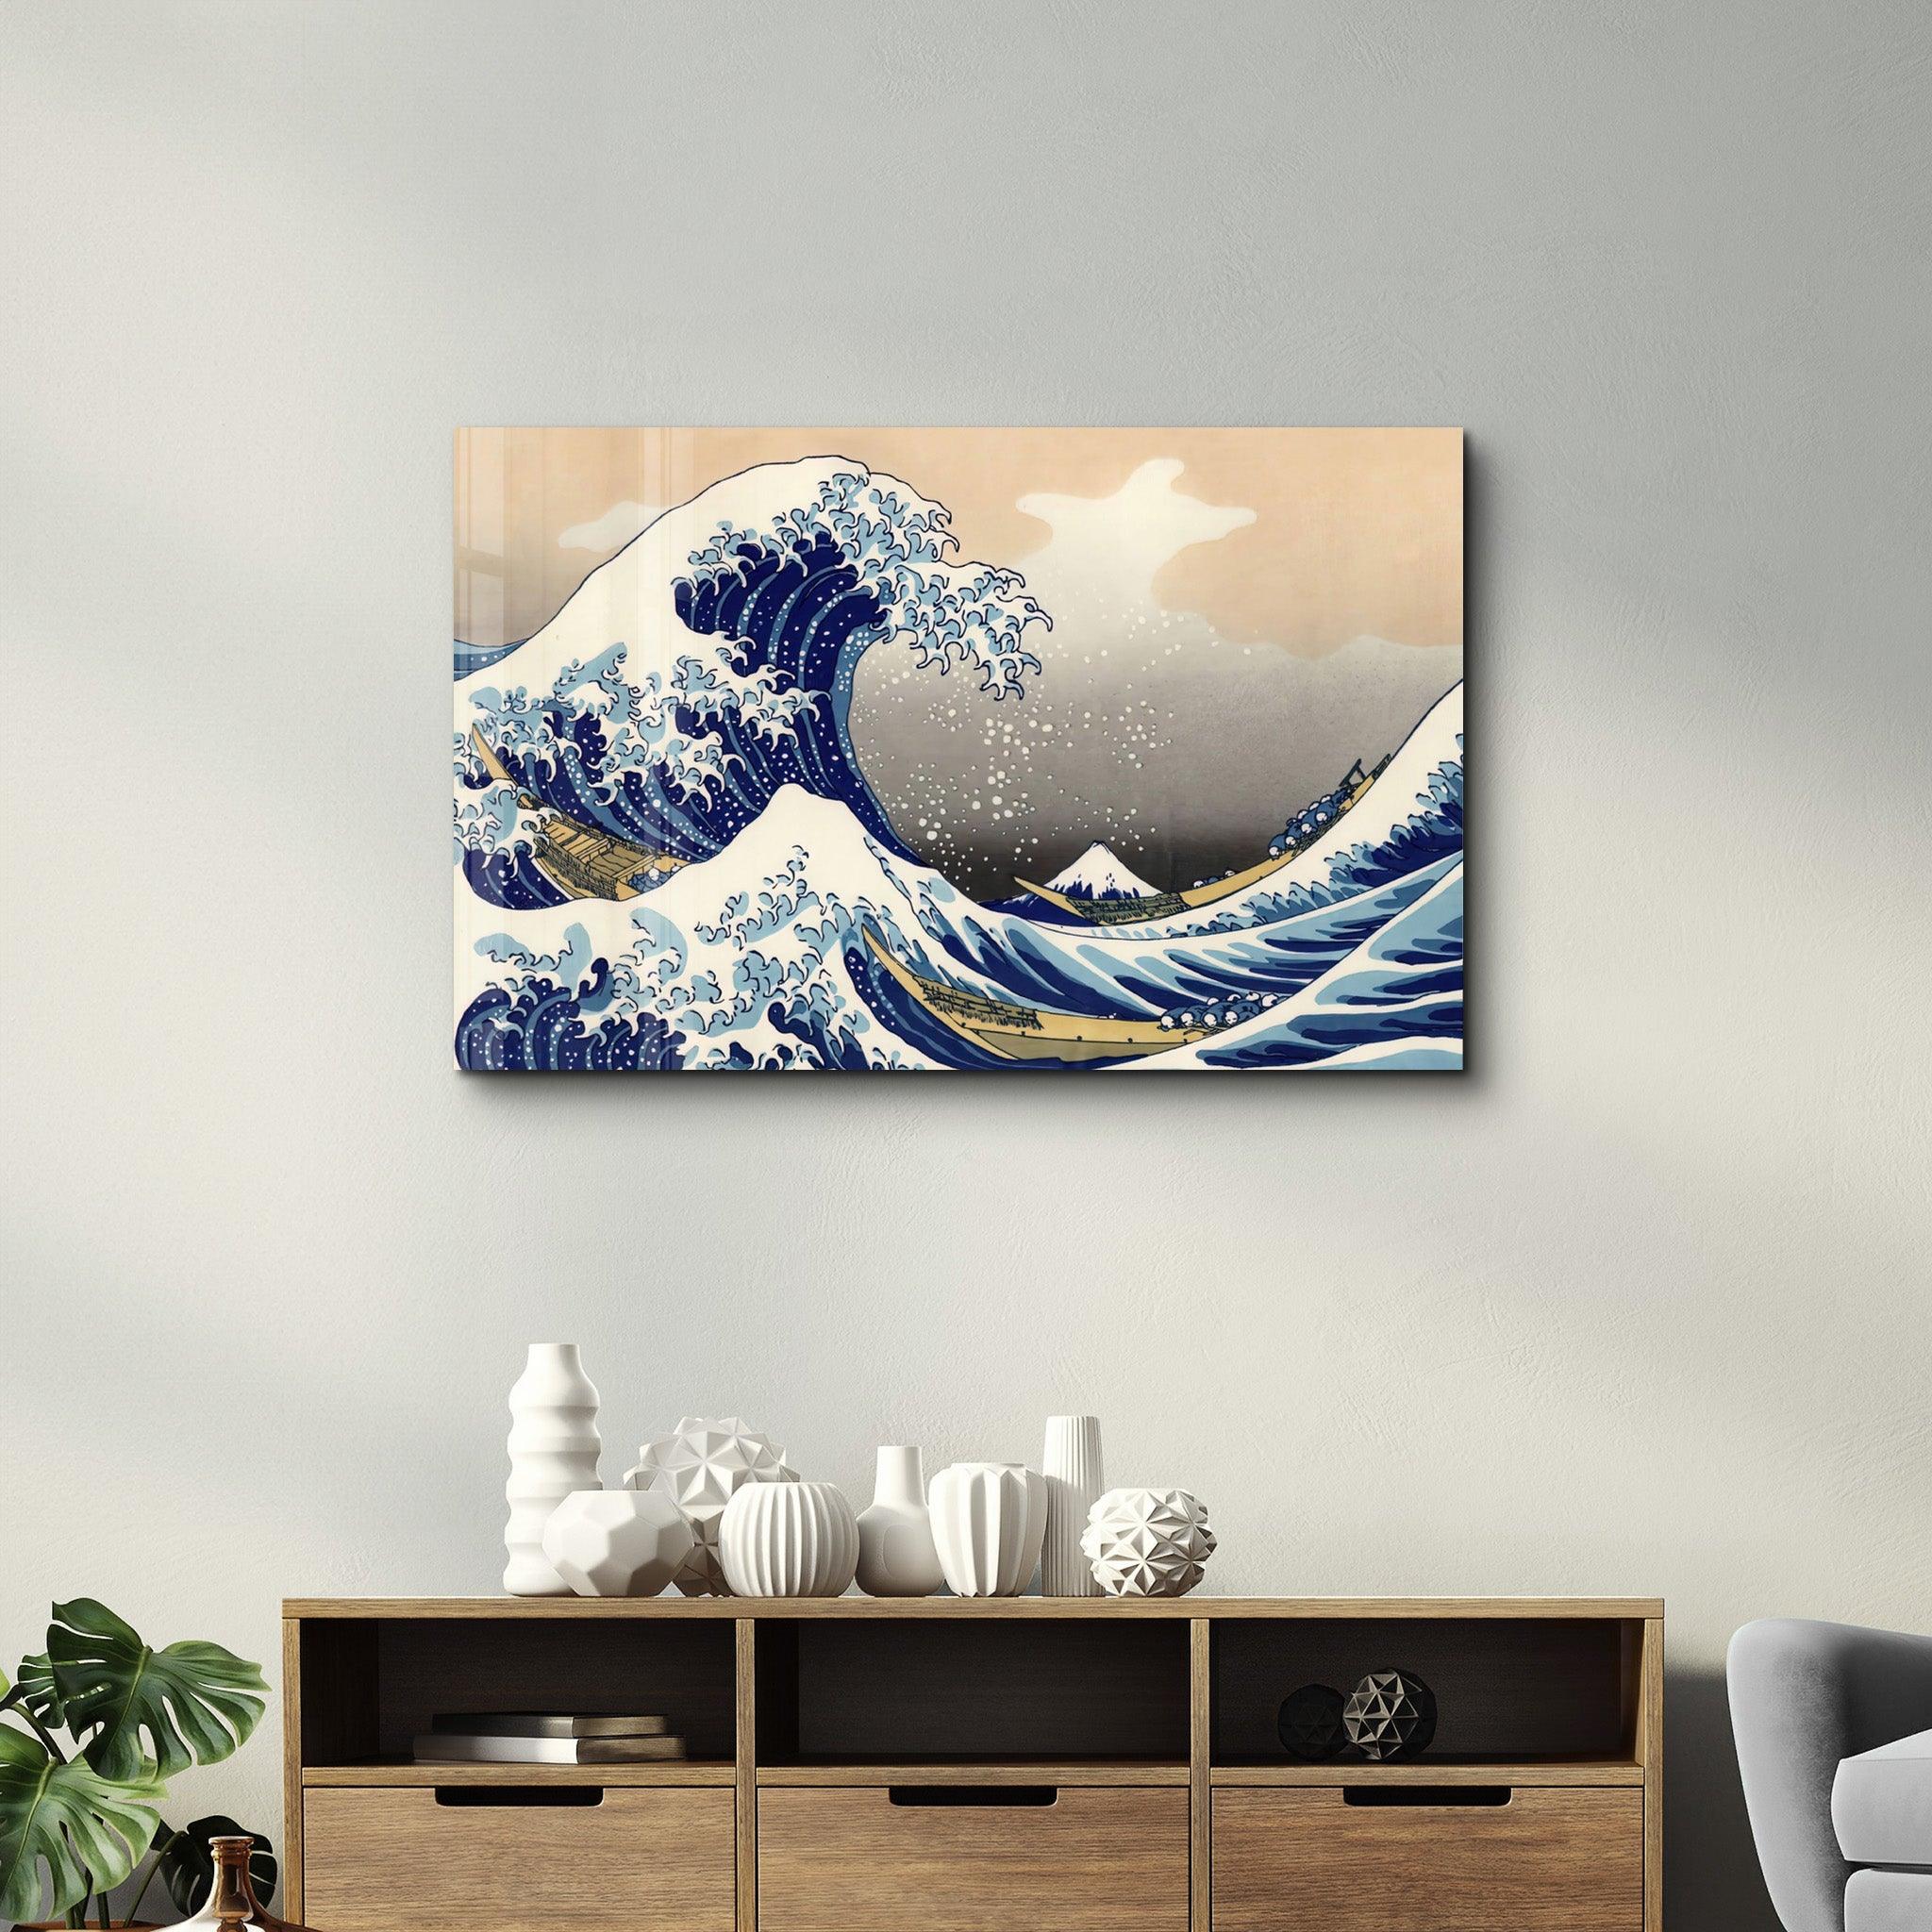 The Great Wave off Kanagawa (1829) by Hokusai | Glass Wall Art - ArtDesigna Glass Printing Wall Art